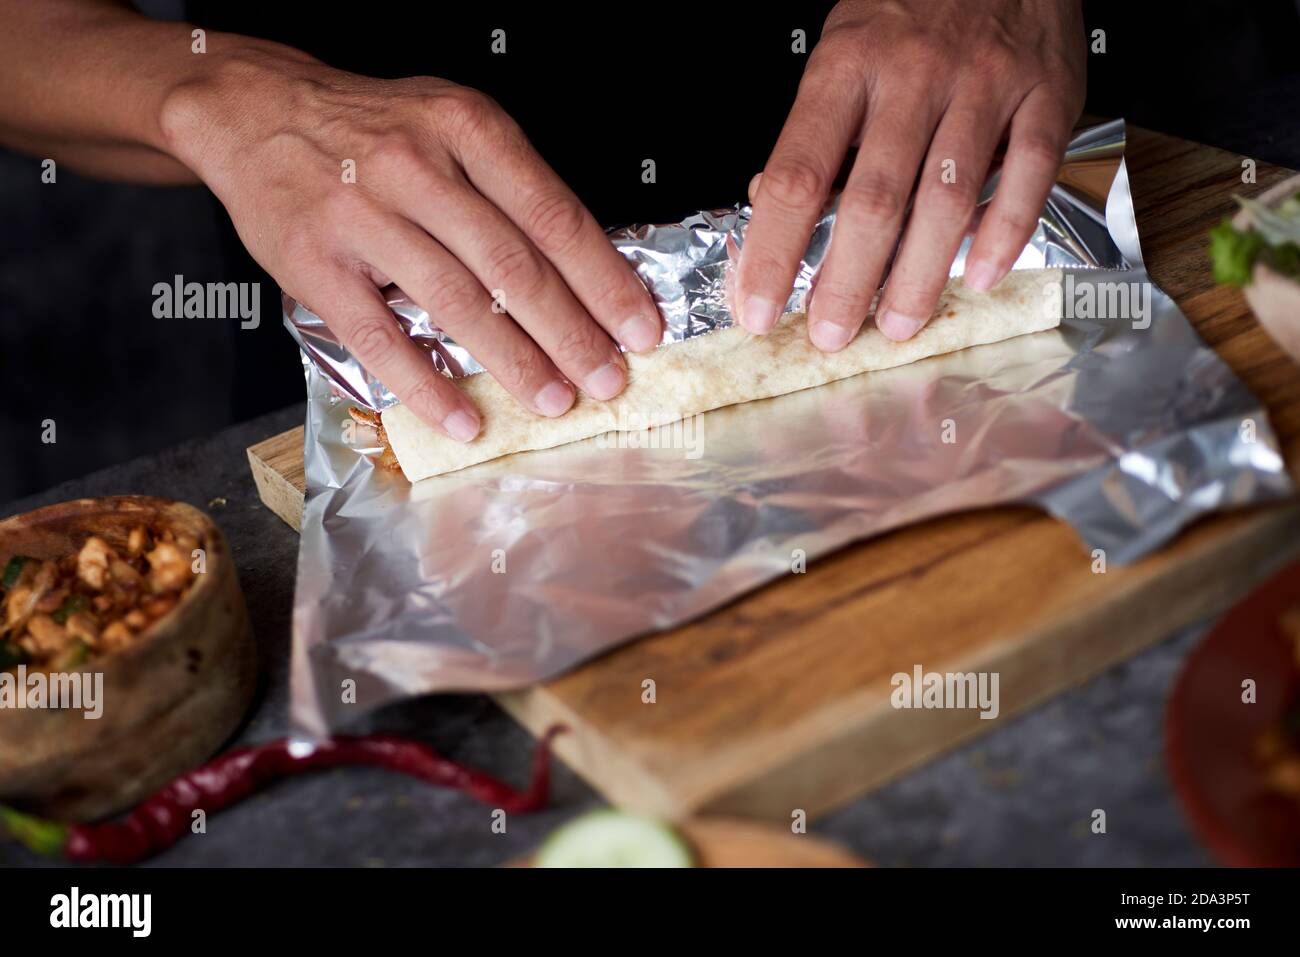 Nahaufnahme eines jungen Mannes, der in Aluminiumfolie ein Durum oder einen Burrito einwickelt, gefüllt mit Hühnerfleisch, das mit verschiedenen Gemüsesorten wie Zwiebeln oder Rot gekocht wird Stockfoto